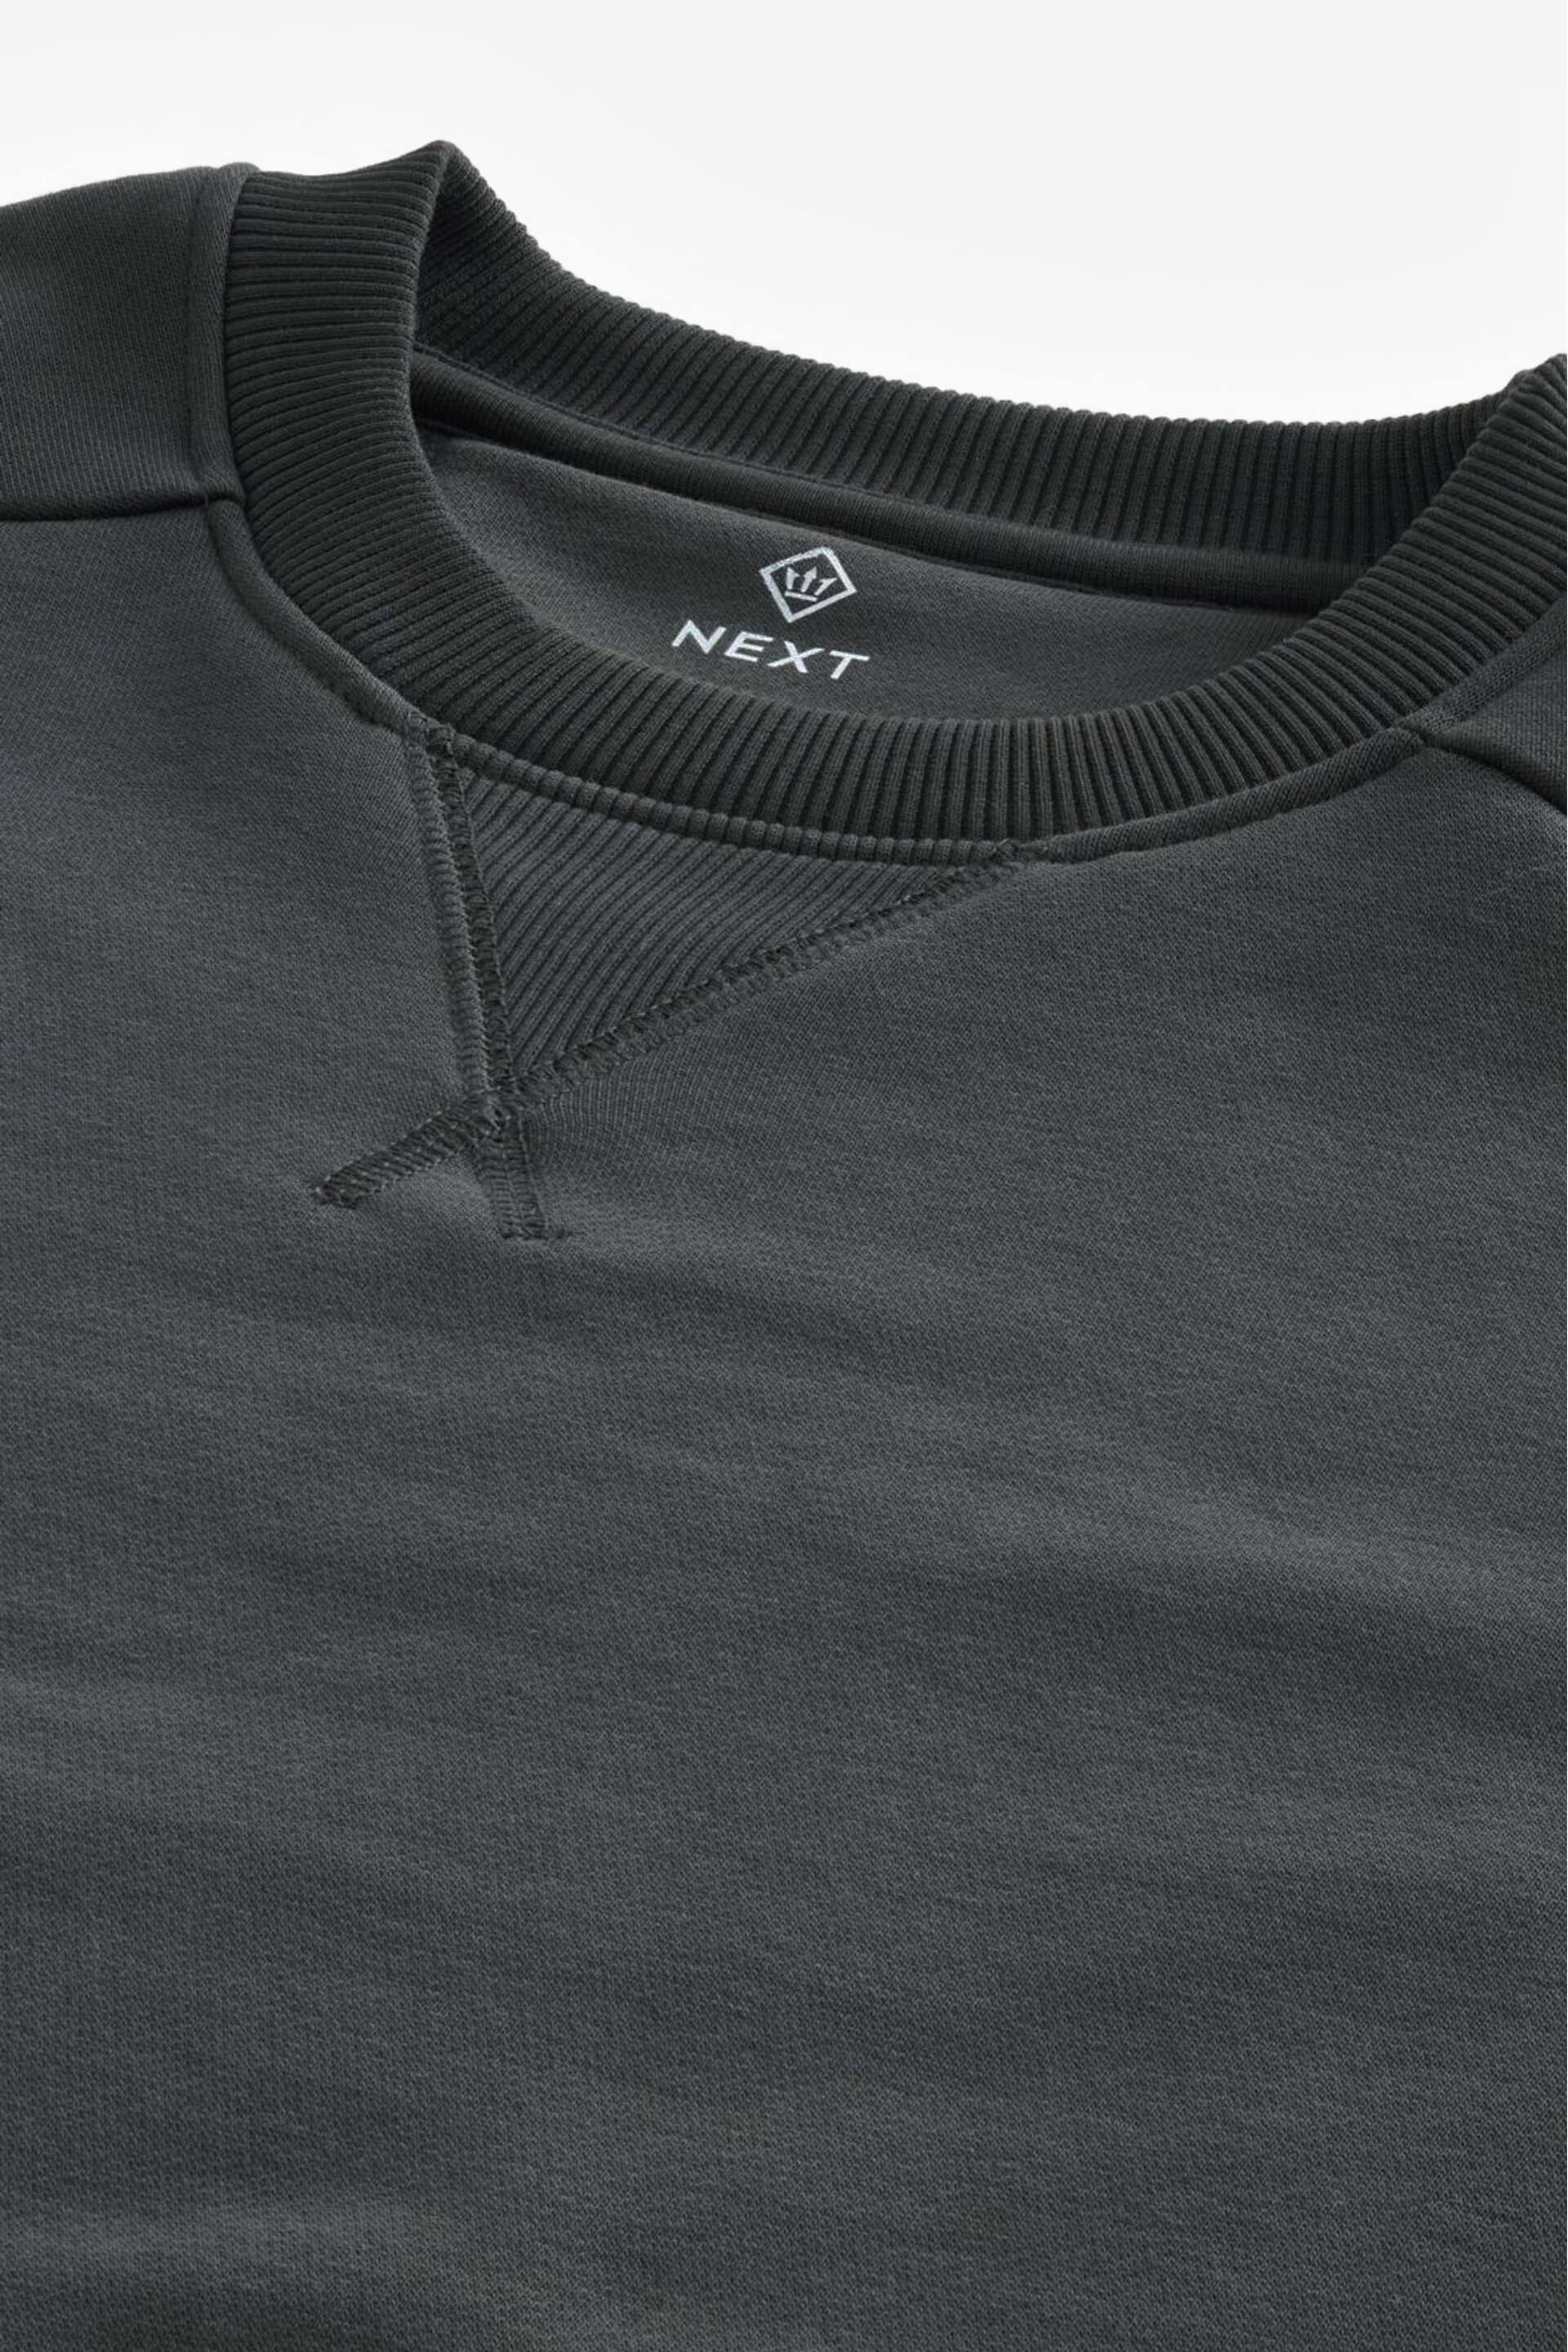 Slate Grey Utility Crew Sweatshirt - Image 9 of 9